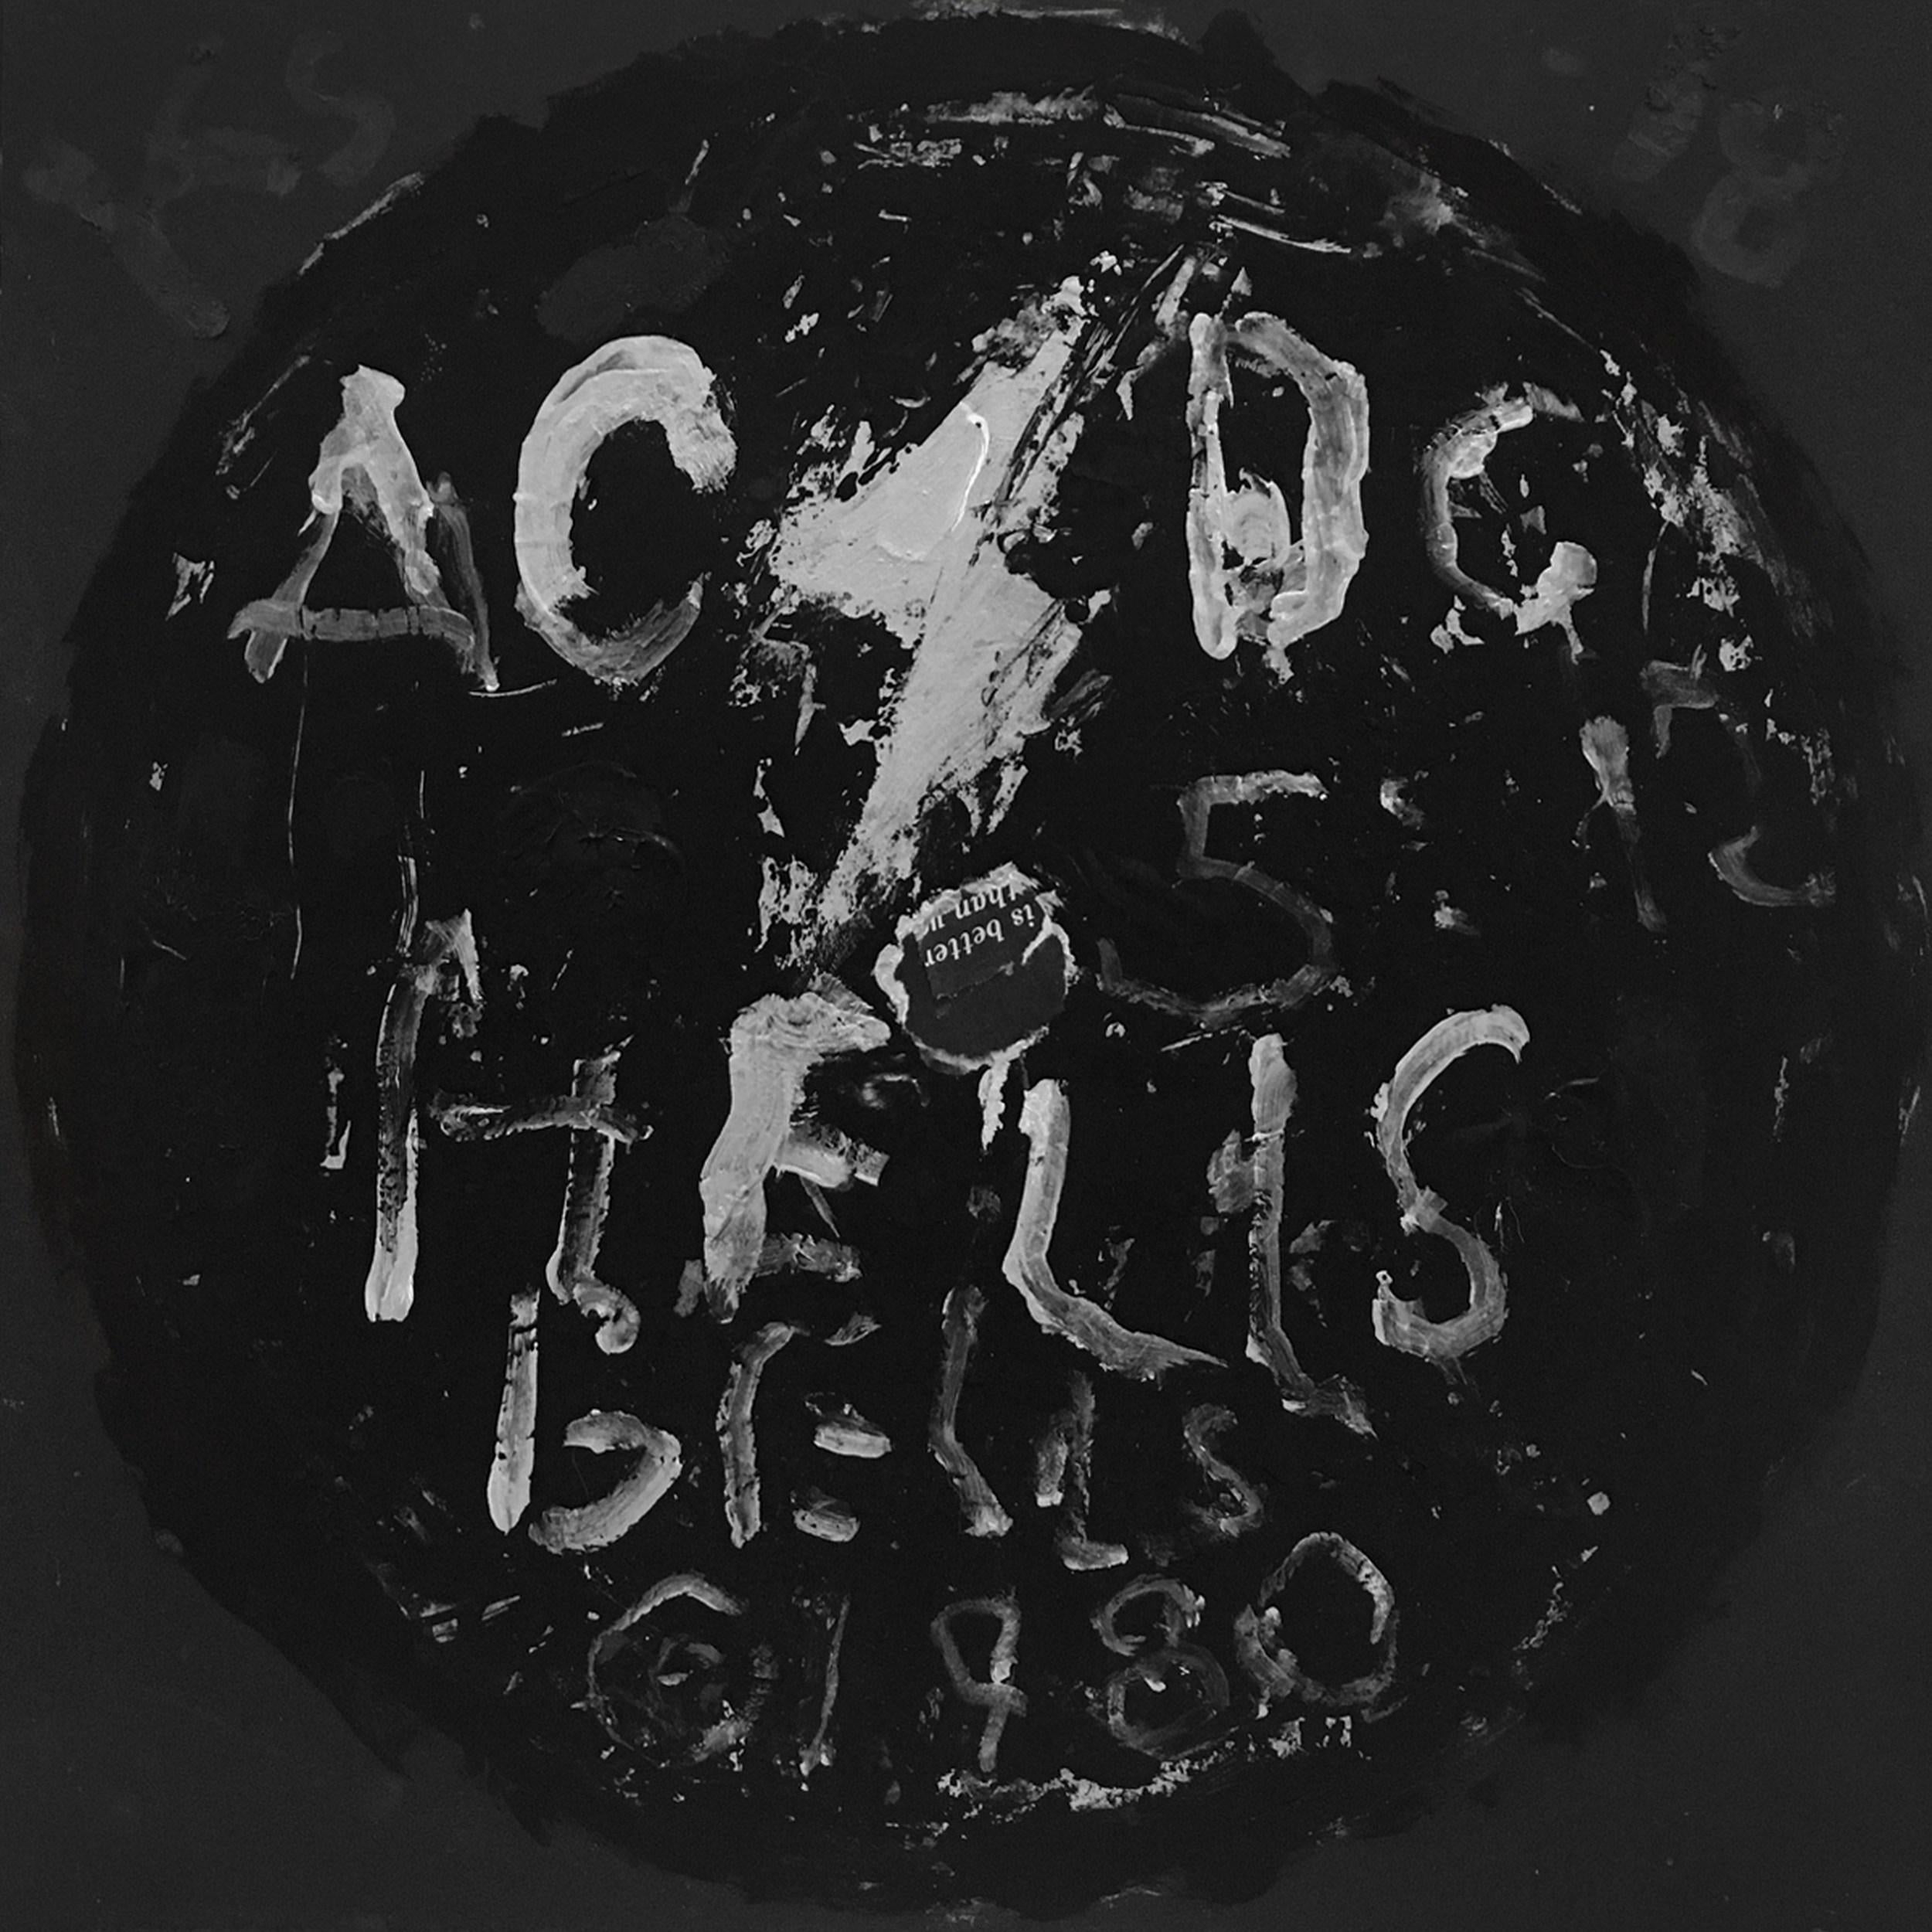 AC/DC - Hells Bells (étiquette d'enregistrement, cloches de tournage, scénographies, pop art contemporain)